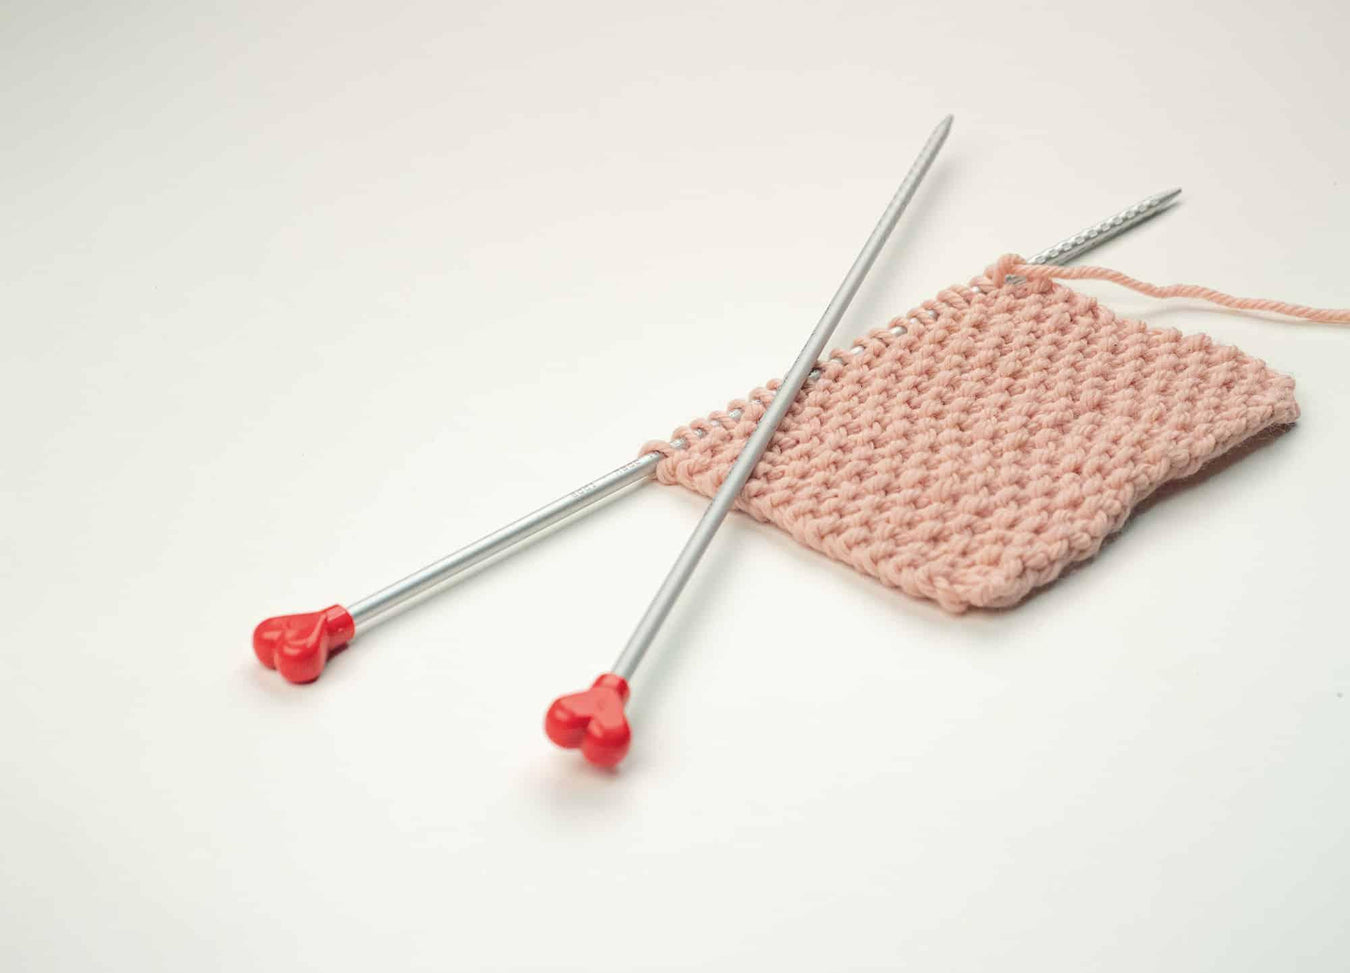 Crochet & Knitting - HobbyJobby